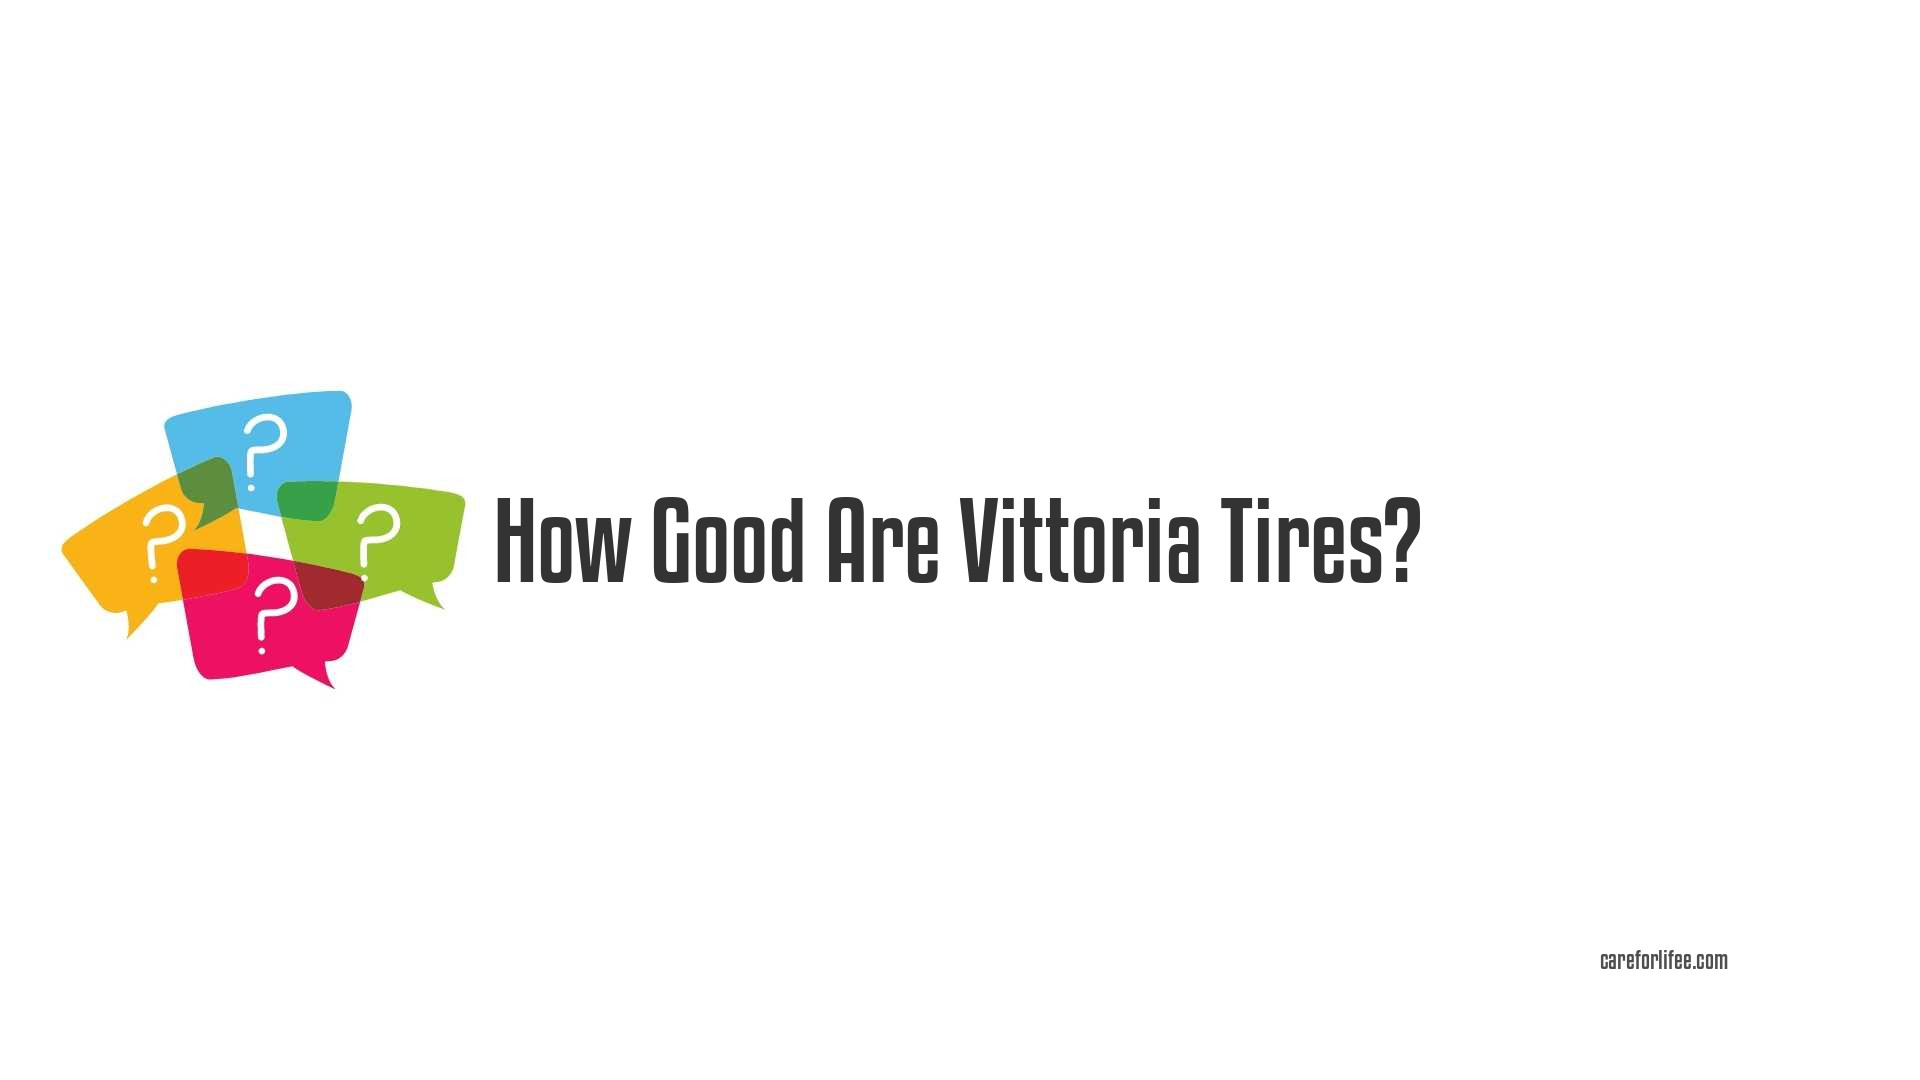 How Good Are Vittoria Tires?